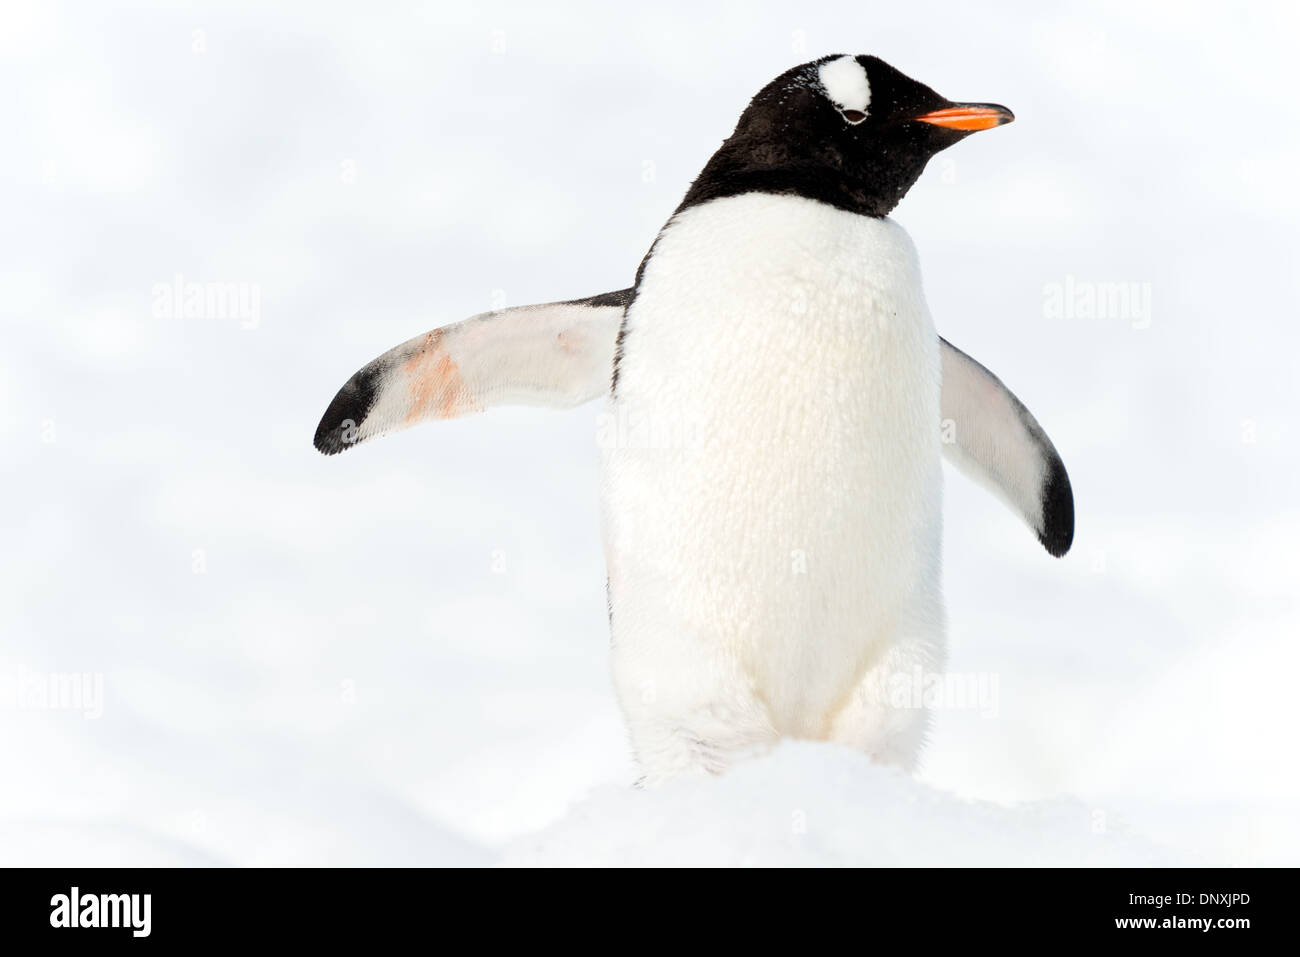 La Antártida - pingüinos papúa (Pygoscelis papua) destaca sobre el blanco de la nieve limpia en Neko Harbour en la Península Antártica. Foto de stock